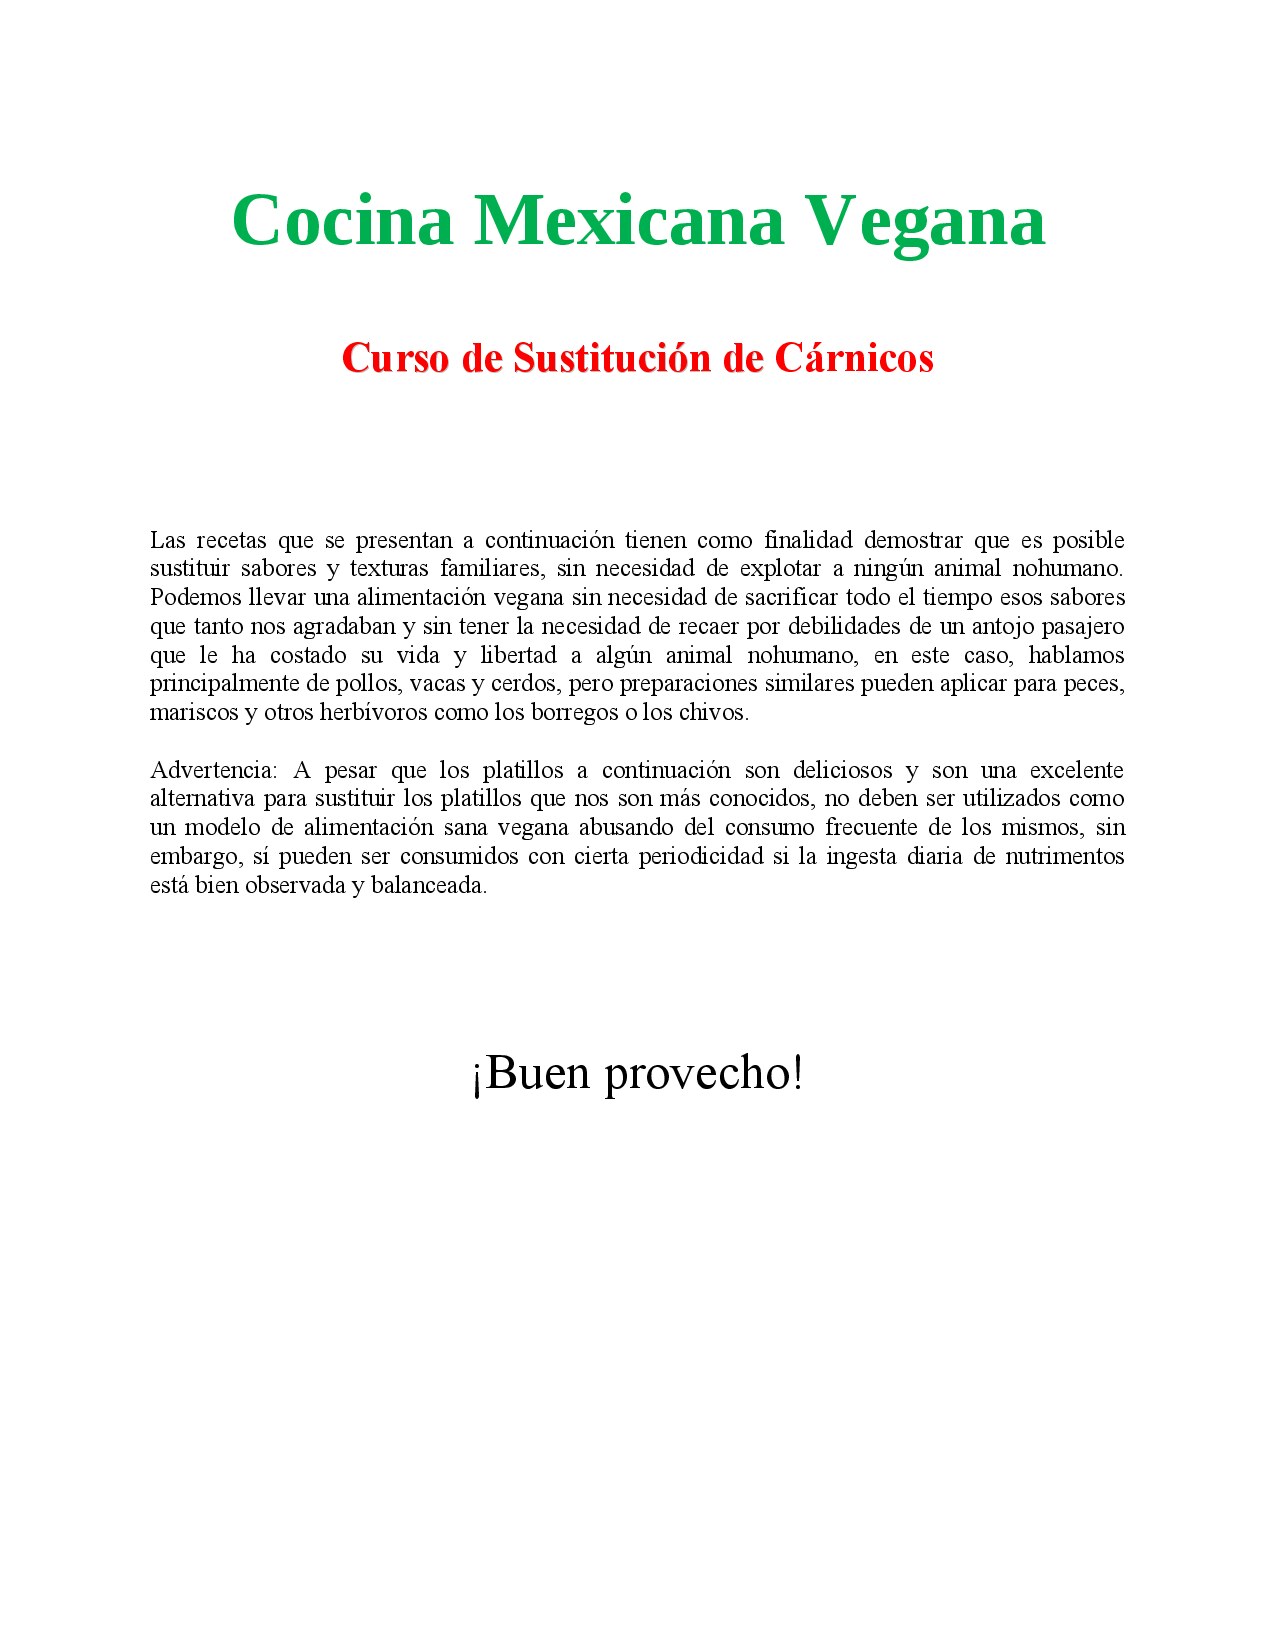 Recetario Cocina Mexicana Vegana